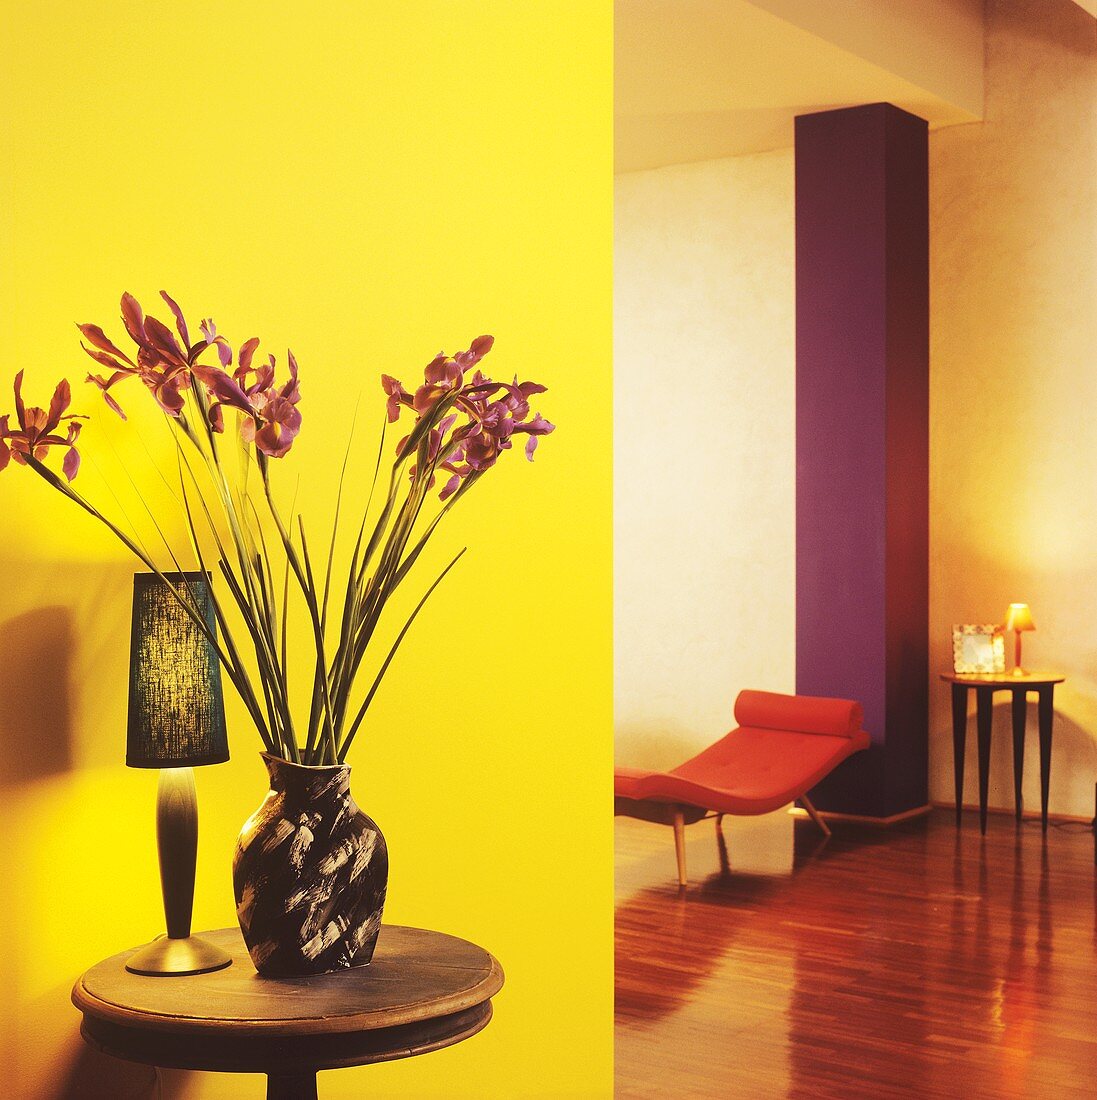 Vase mit Iris auf kleinem Holztisch vor gelber Wand in Kontrast mit lilafarbener Mauersäule und orangefarbener Liege in modernem Wohnzimmer